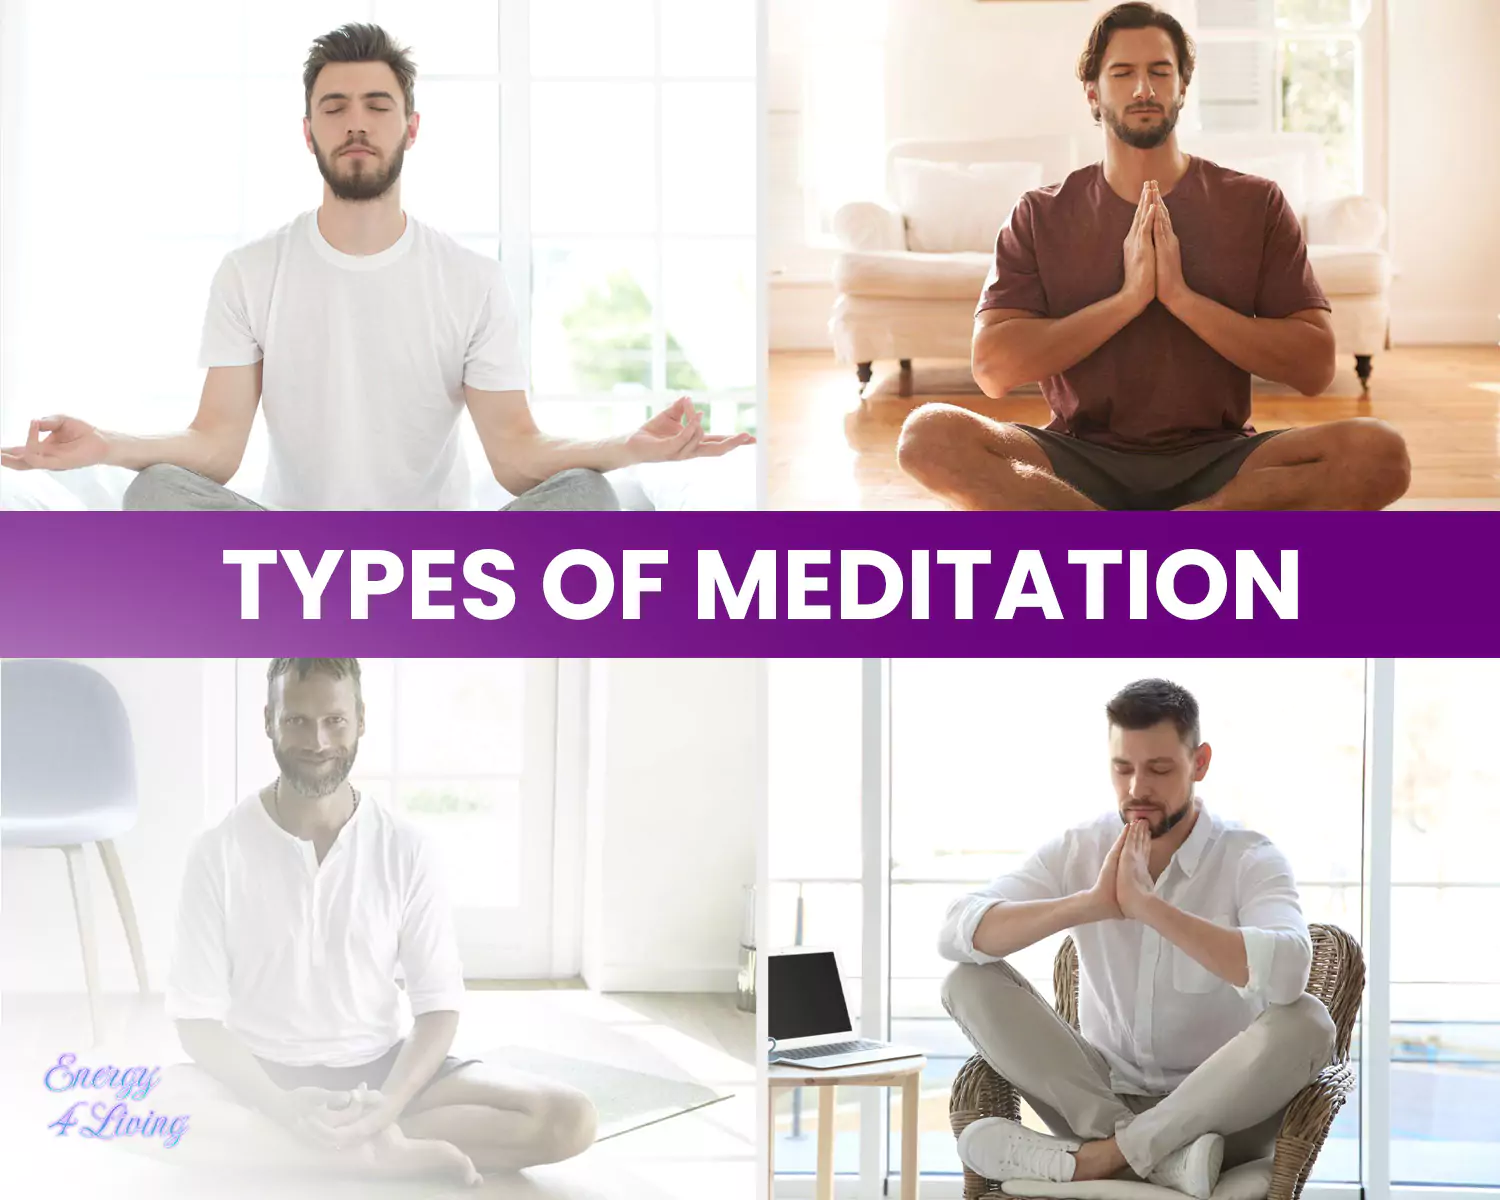 Types of Meditation